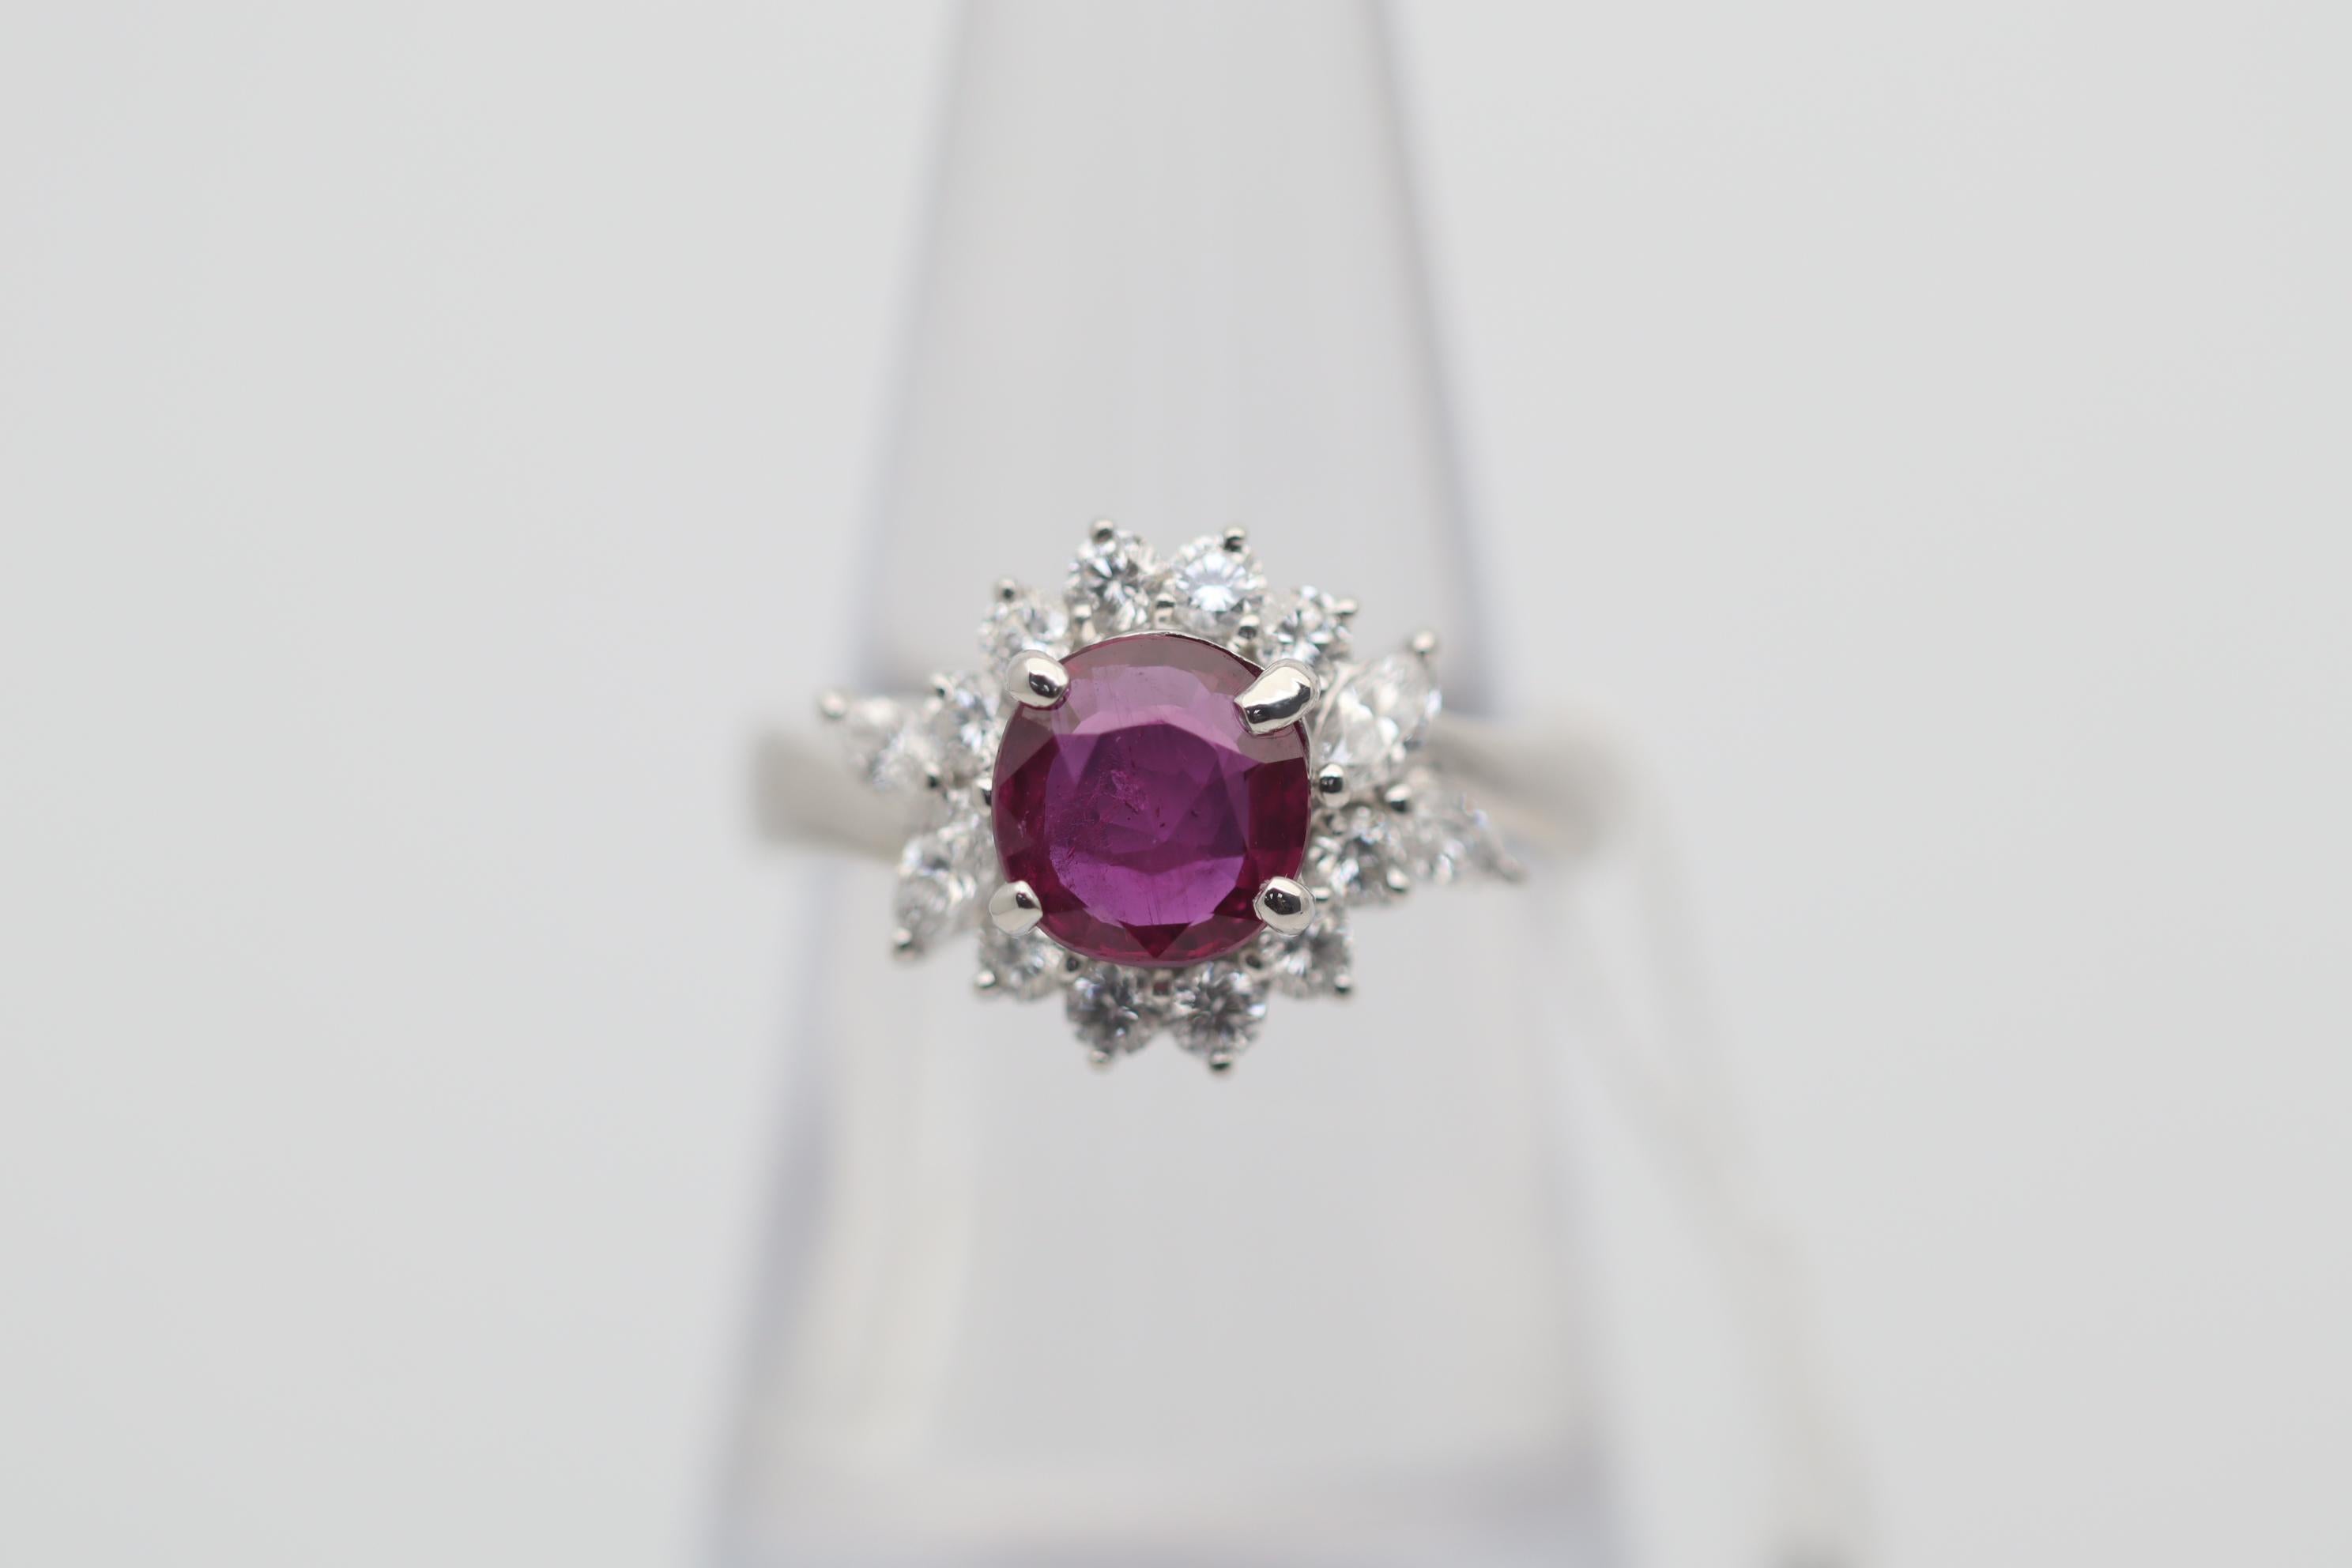 Ein eleganter und stilvoller Ring mit einem feinen Rubin von 1,54 Karat. Er ist kissenförmig und hat eine satte rote Farbe und einen brillanten Kristall. Er wird von 0,67 Karat runden Brillanten und Diamanten in Marquise-Form akzentuiert, die in